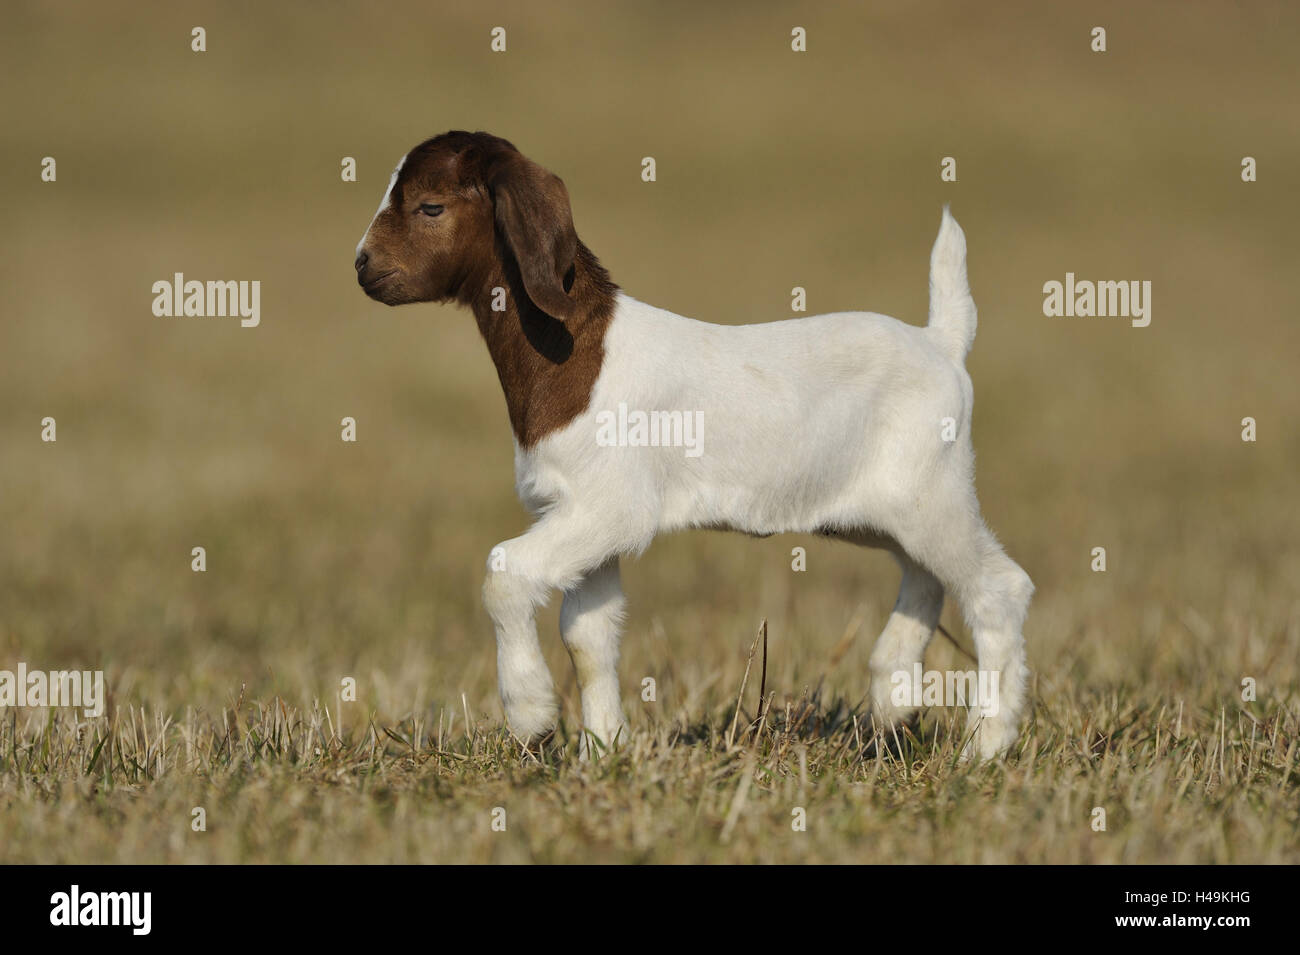 Boer goat, kid, Stock Photo